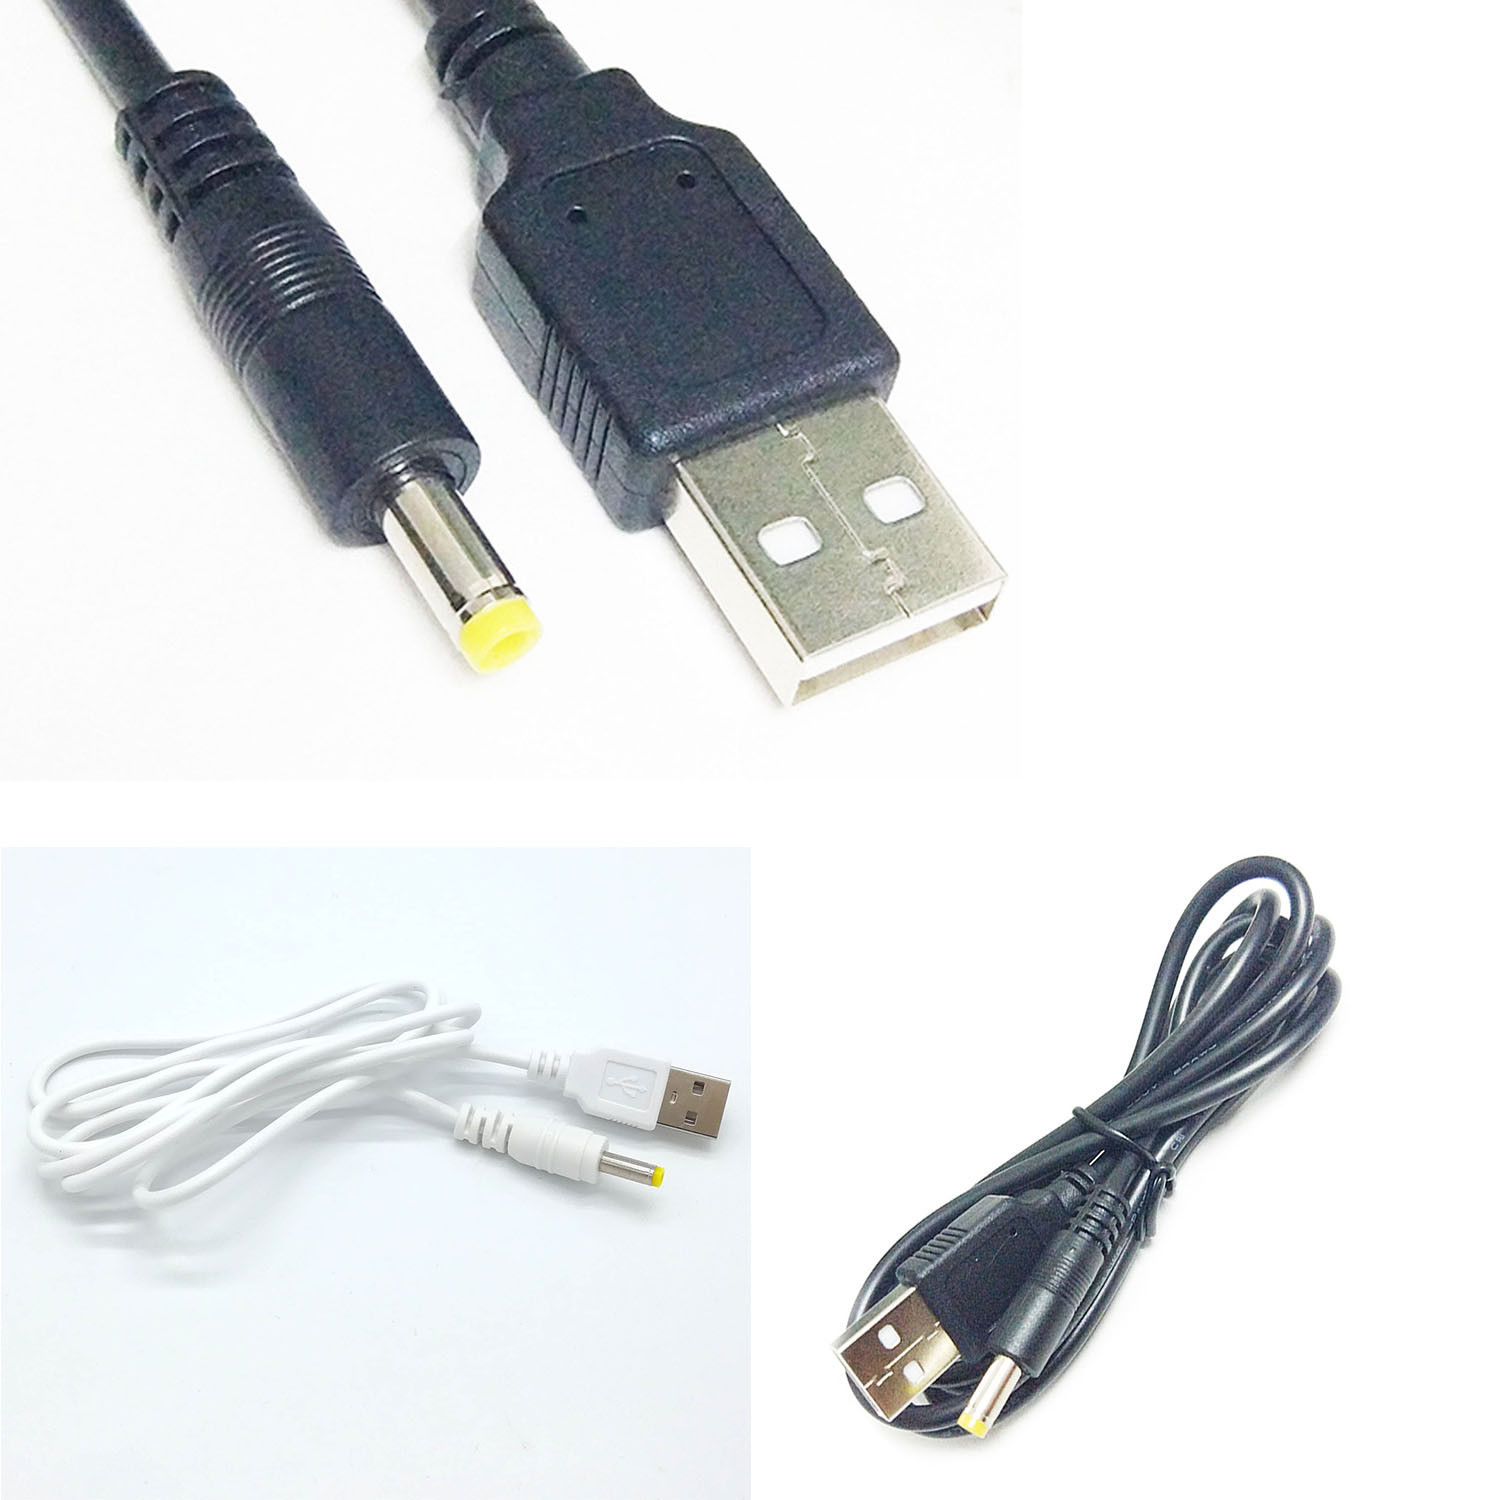 USB Charger Cable for Kodak EASYSHARE camera V1253 V1273 V530 V550 V570 V603 V610 V705 V803 Z730 Z7590 Z760